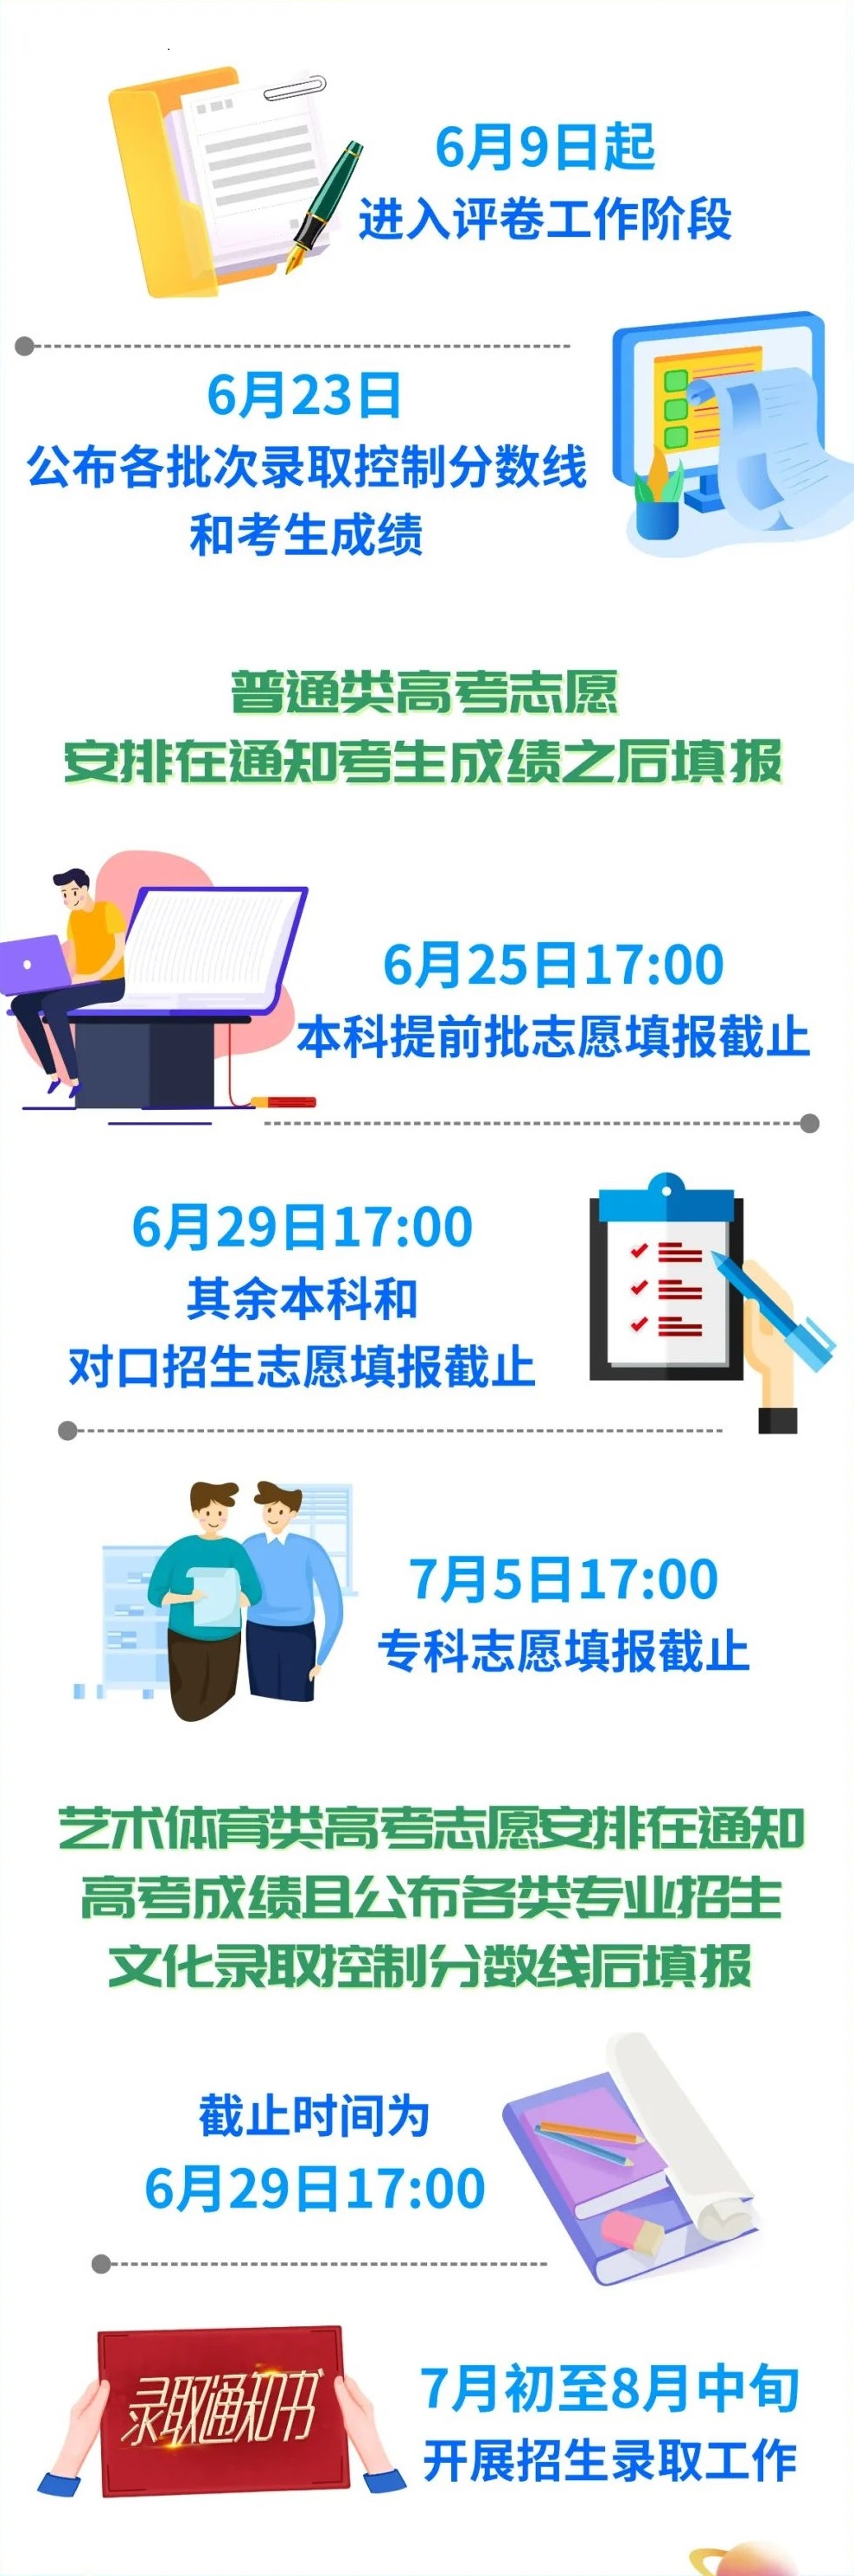 2022四川高考报志愿时间和截止时间 一般持续多久